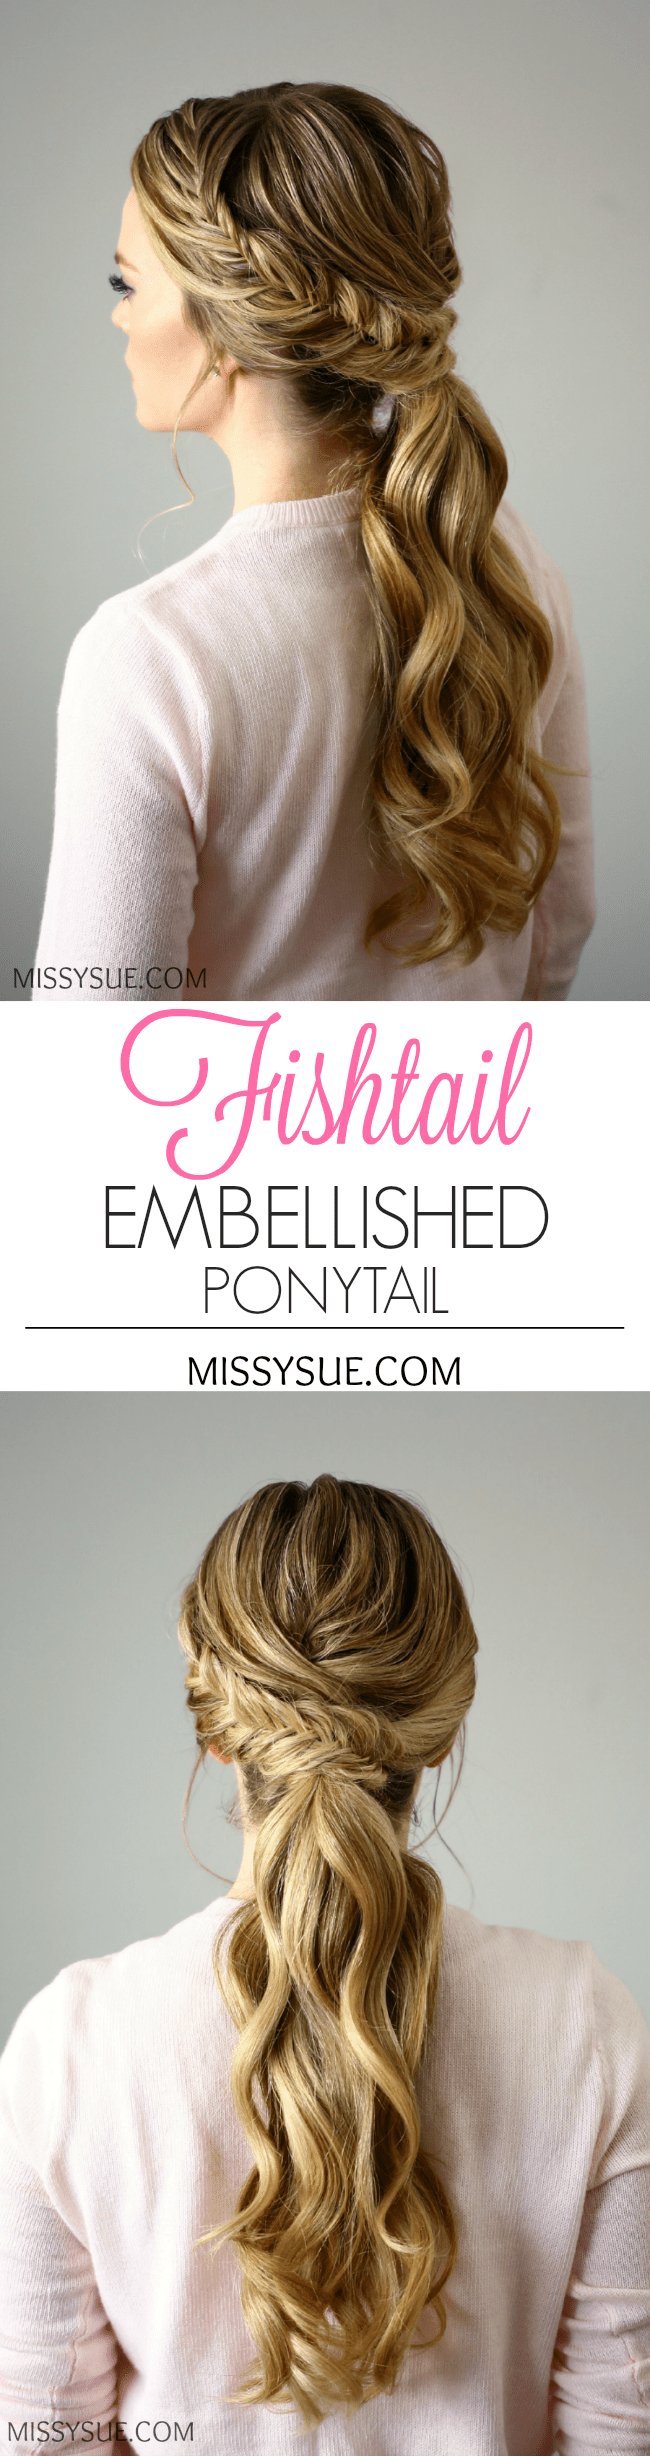 fishtail-embellished-ponytail-missysue-2